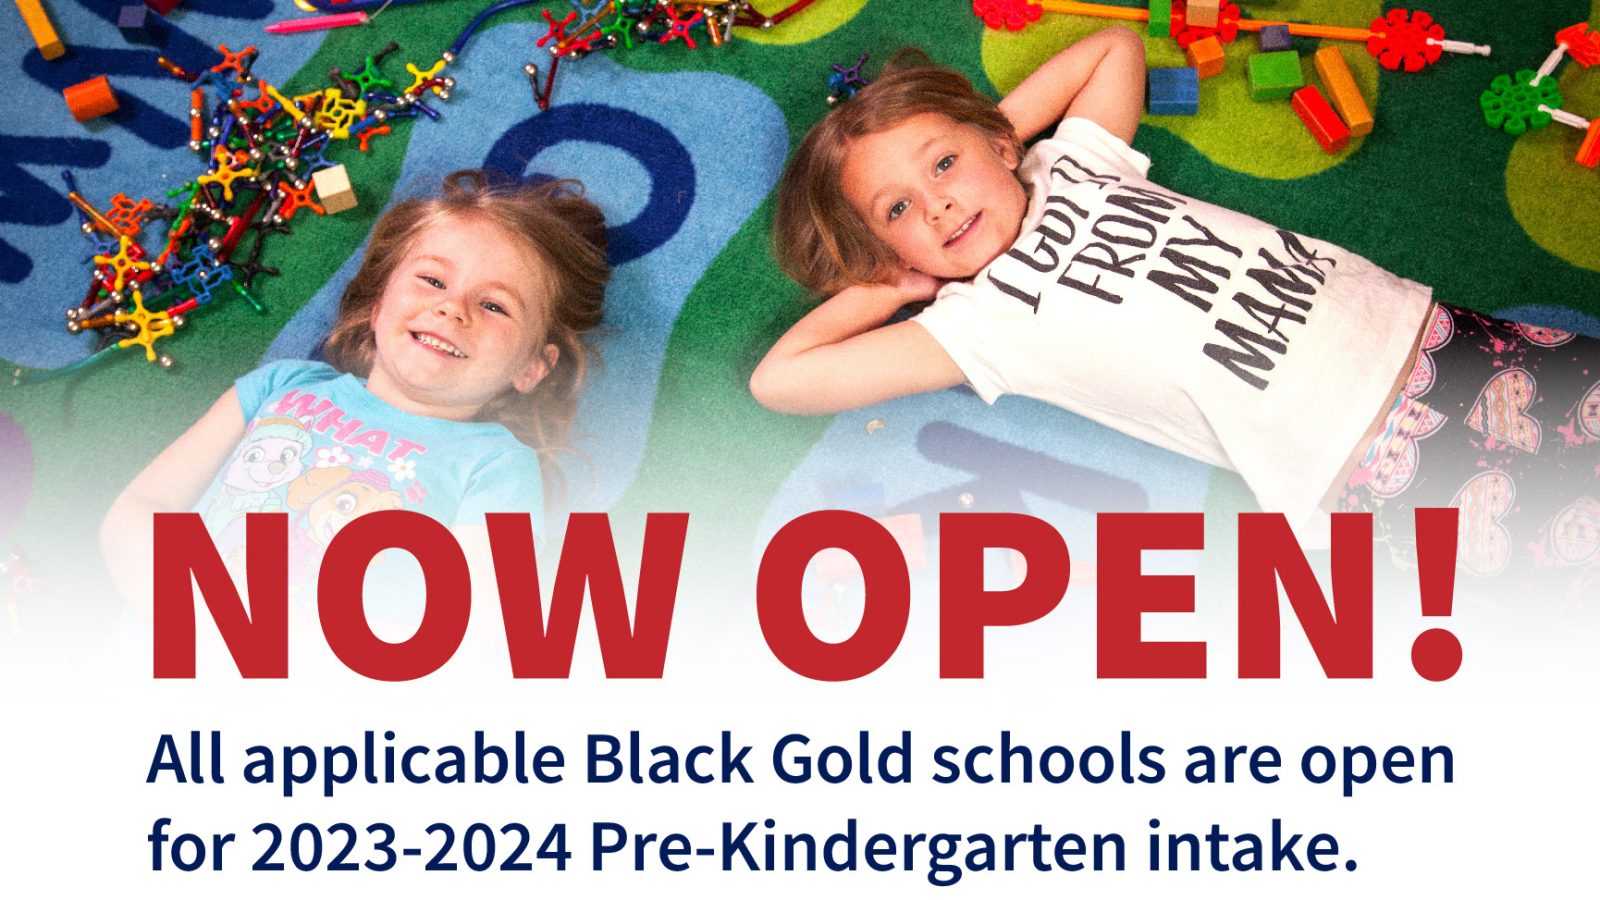 Pre-Kindergarten intake begins Feb. 1, 2023